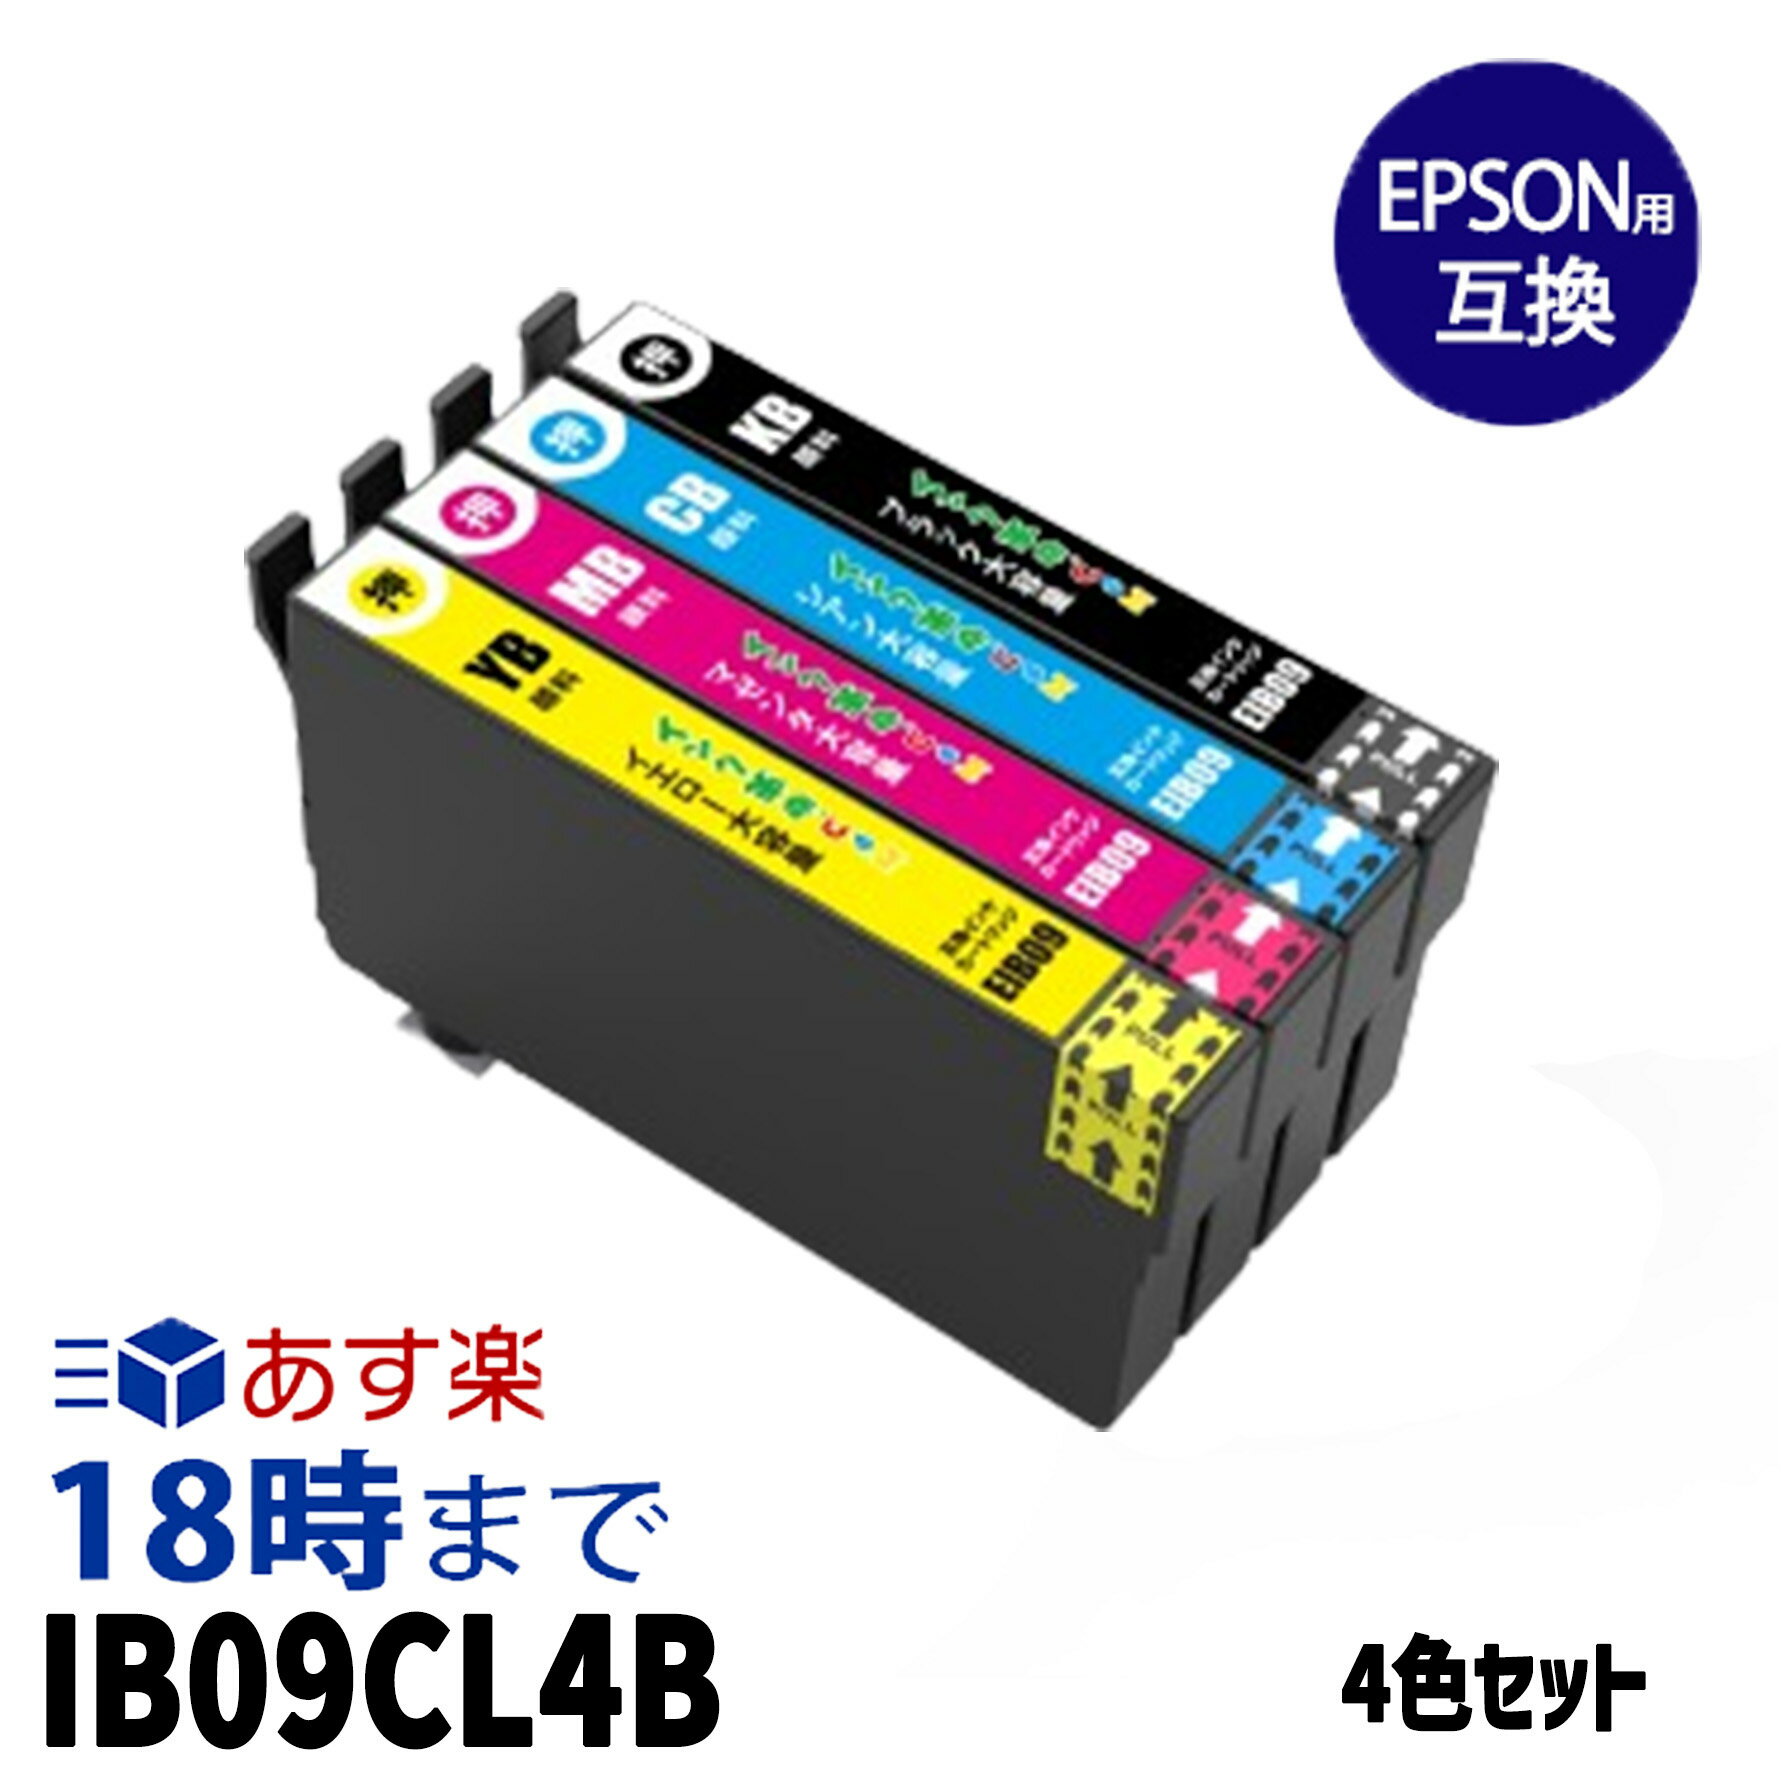 エプソンインク IB09CL4B 顔料4色セット エプソン用 IB09CL4B 顔料4色セット 互換インク ib09cl4b 内容:IB09KB IB09CB IB09MB IB09YB 機種:PX-M730F PX-S730 